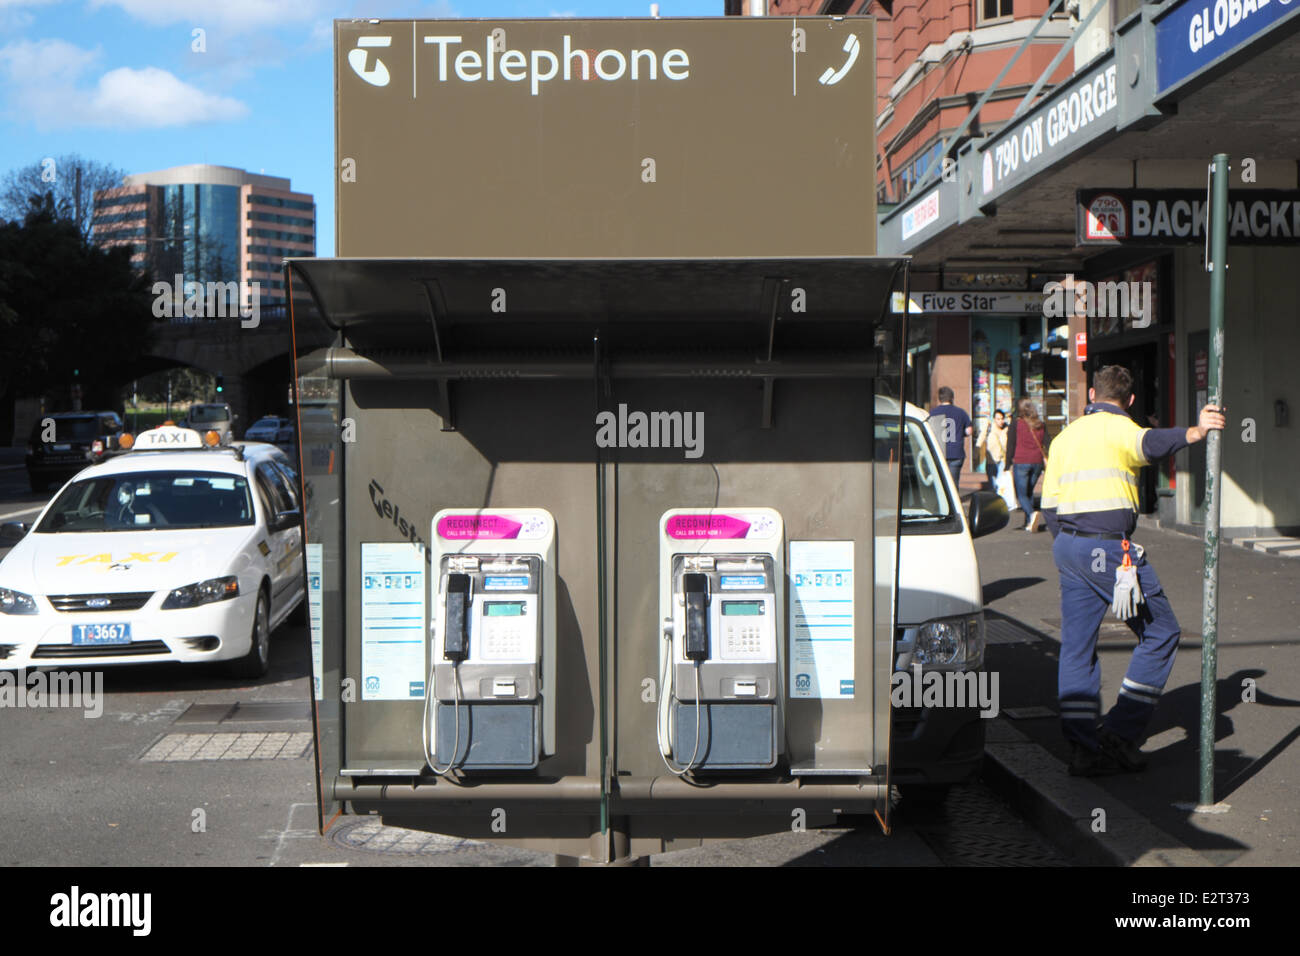 pair of public payphones in Sydney city centre,australia Stock Photo